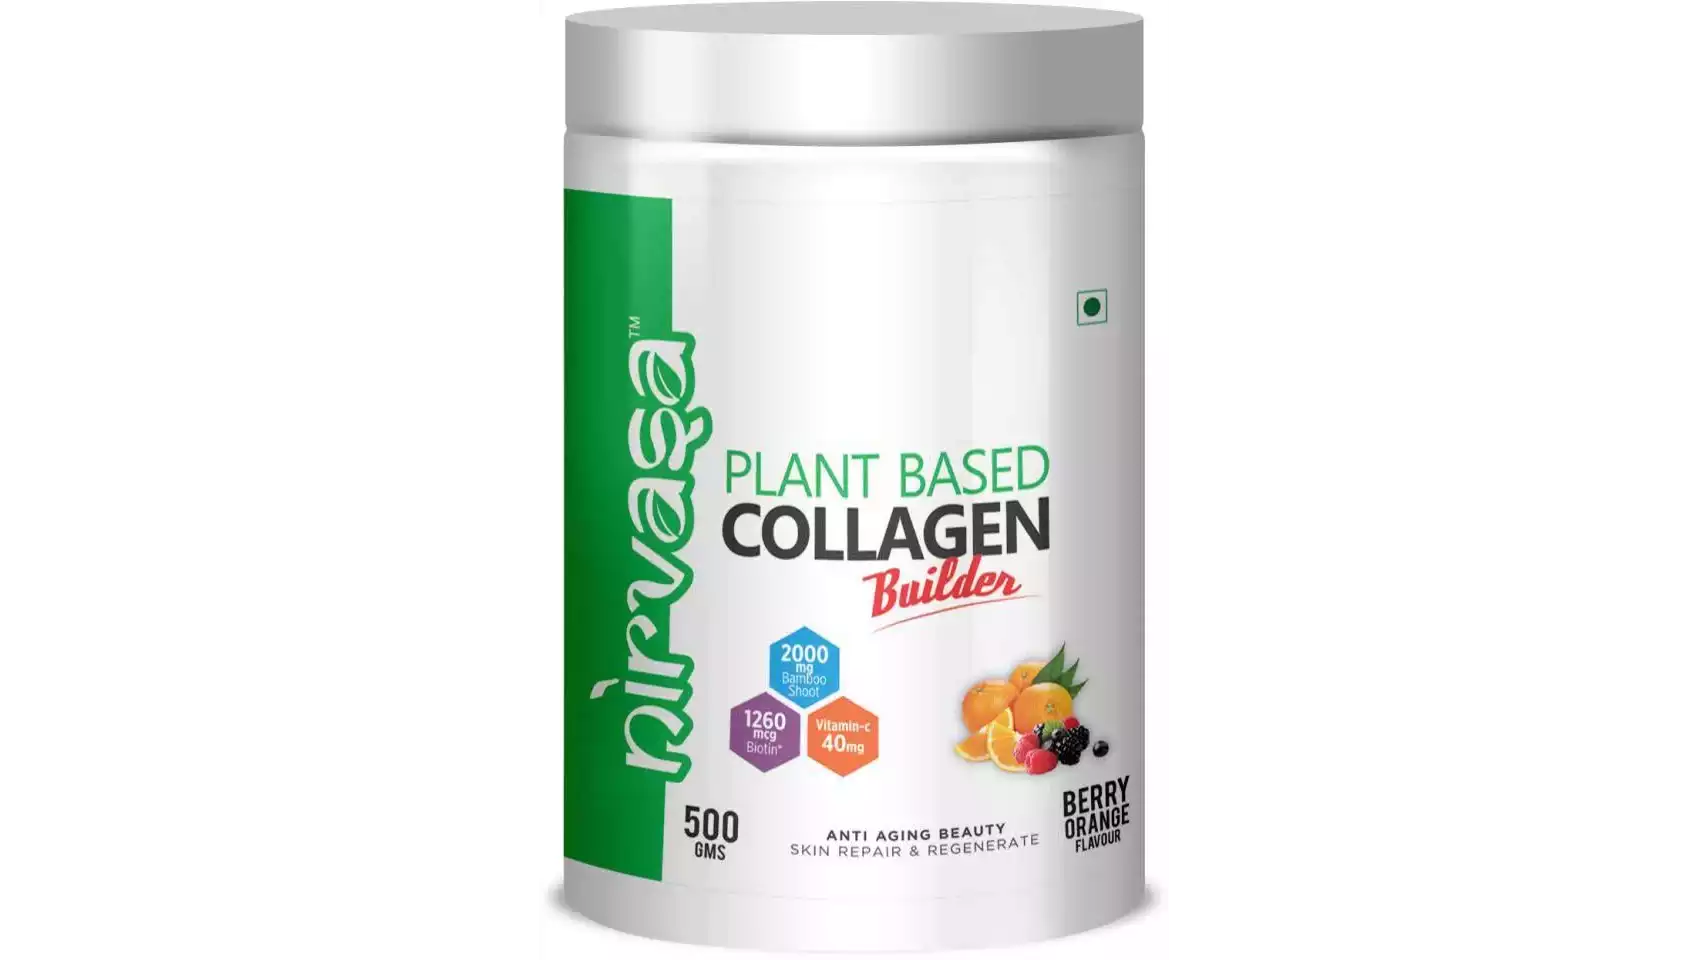 Nirvasa Plant Based Collagen Builder Berry Orange Flavour (500g)